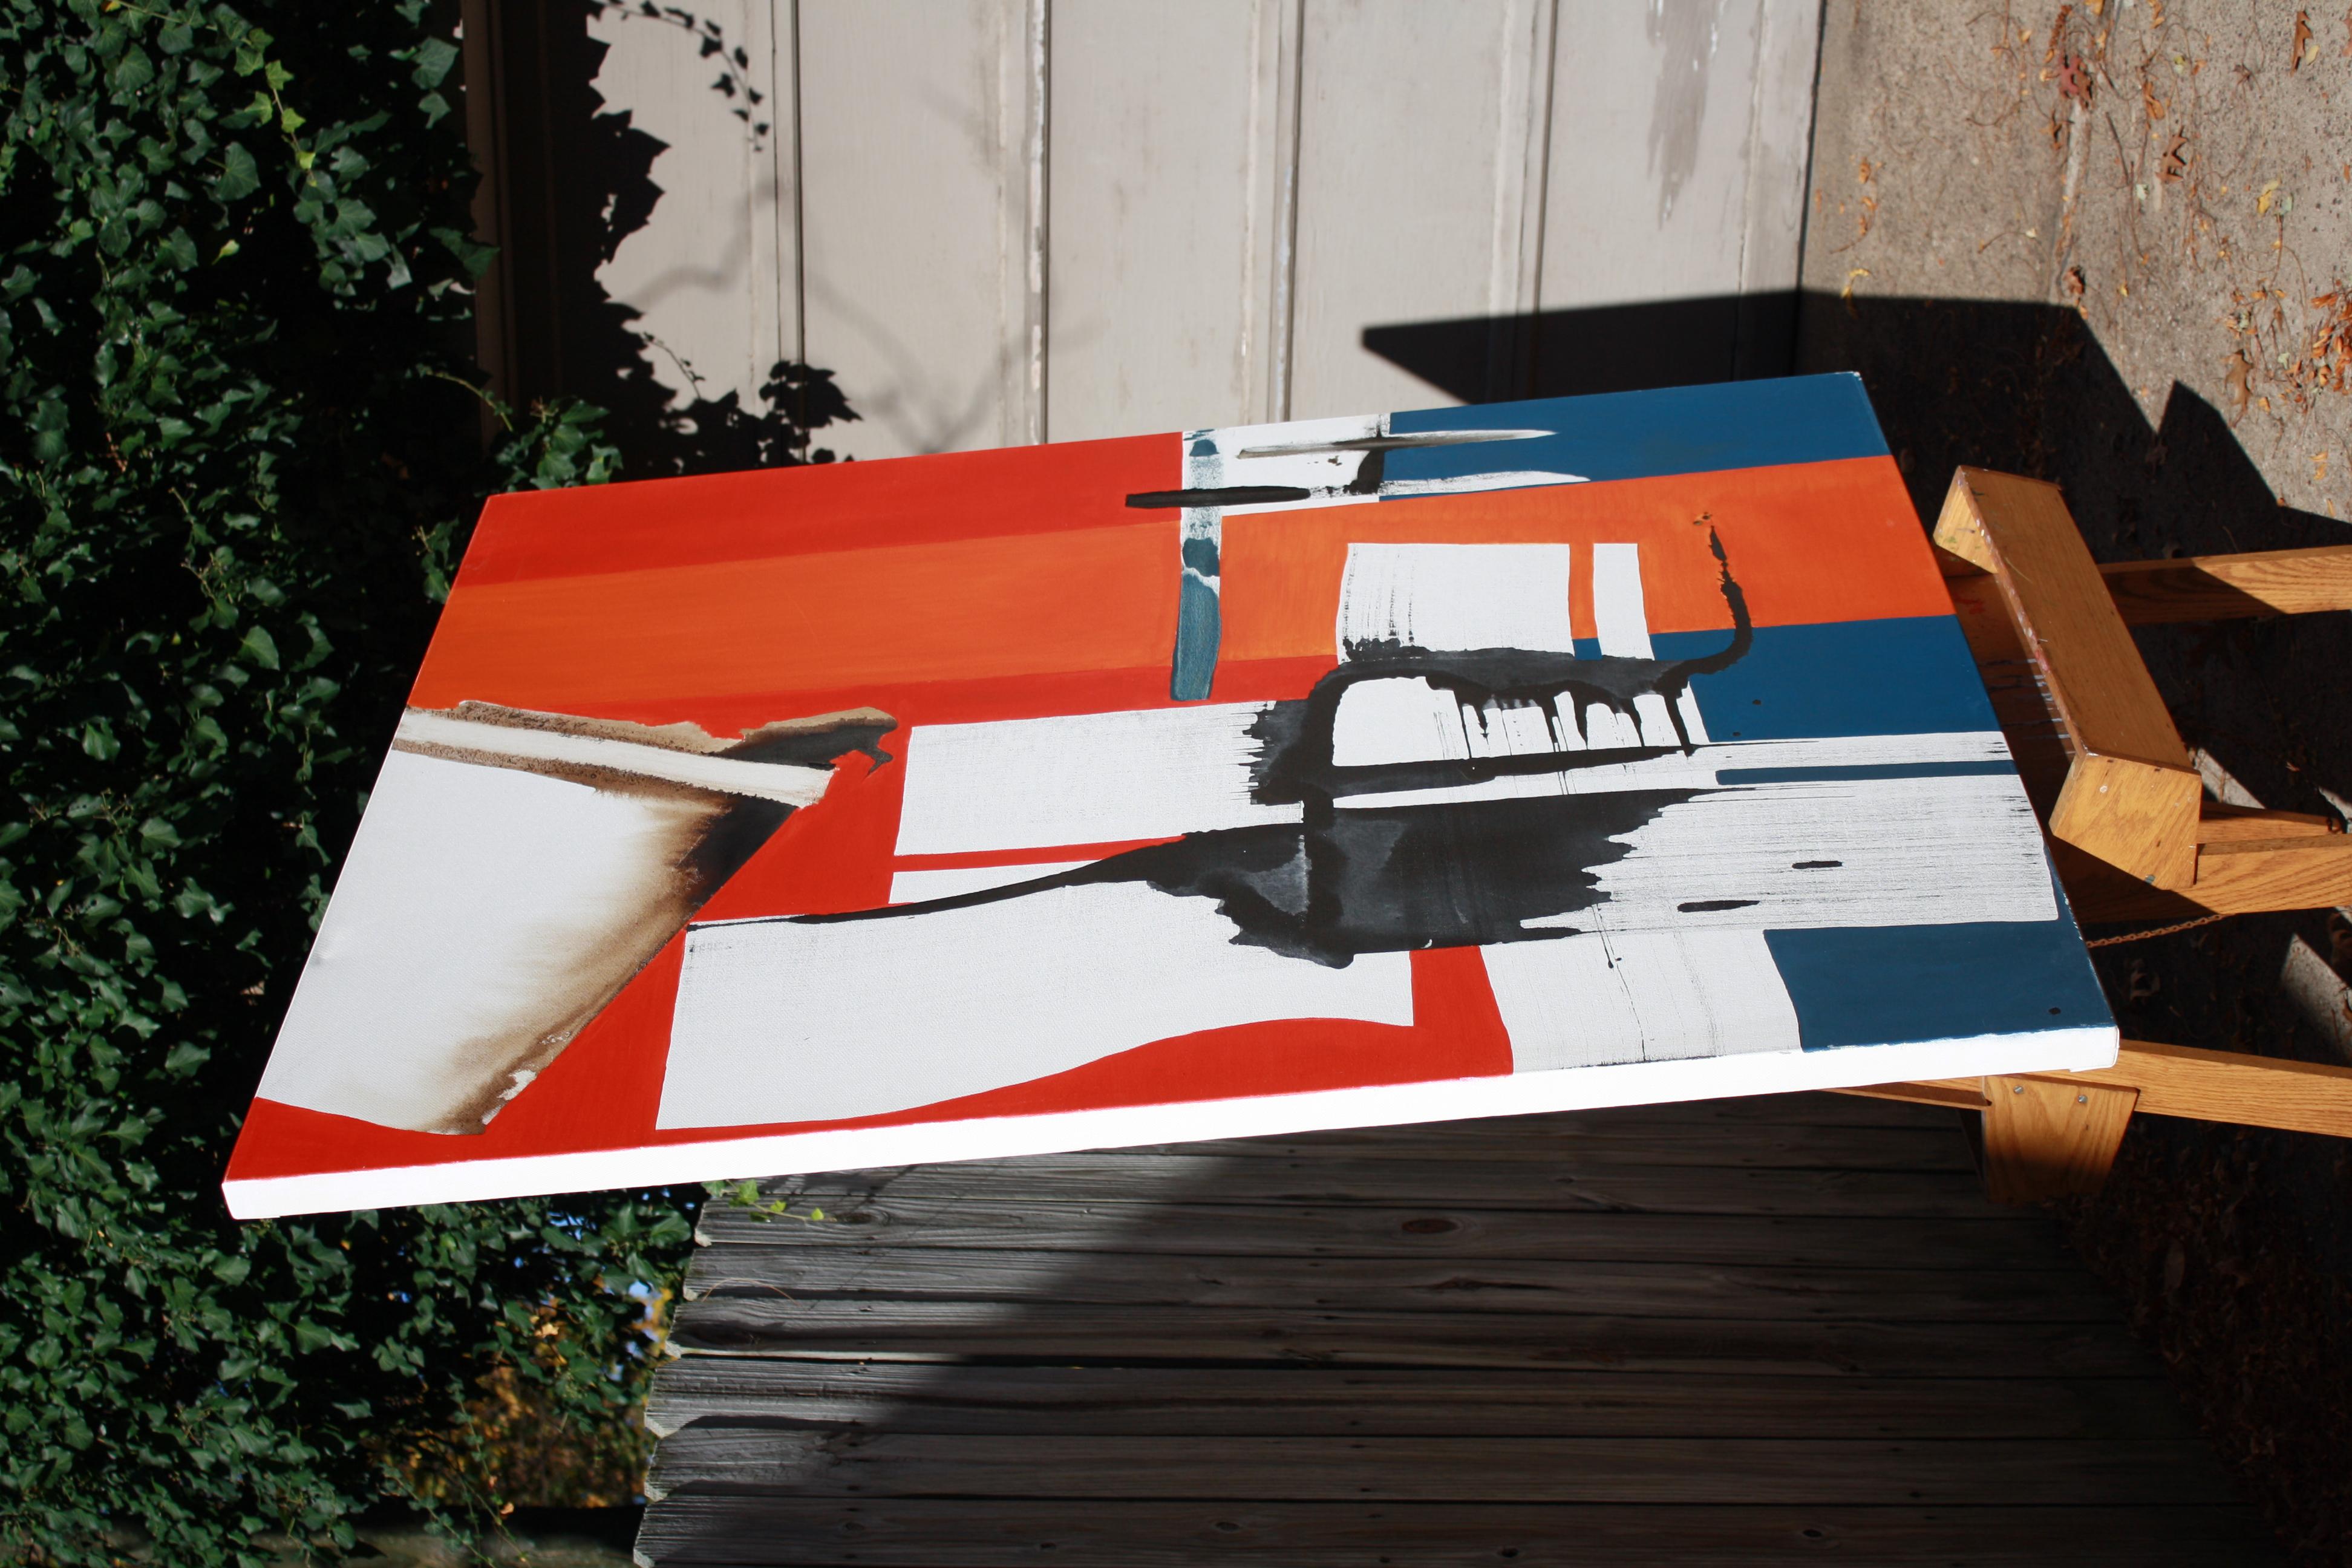 <p>Kommentare des KünstlersDer Künstler Roman Antopolsky kreiert ein kontrastreiches Abstraktes zwischen drei Volltonfarben.<br /> Die Strukturen von Rot, Blau und Braun nehmen in der Komposition Gestalt an. Die Leinwand erforscht das Gewicht, das